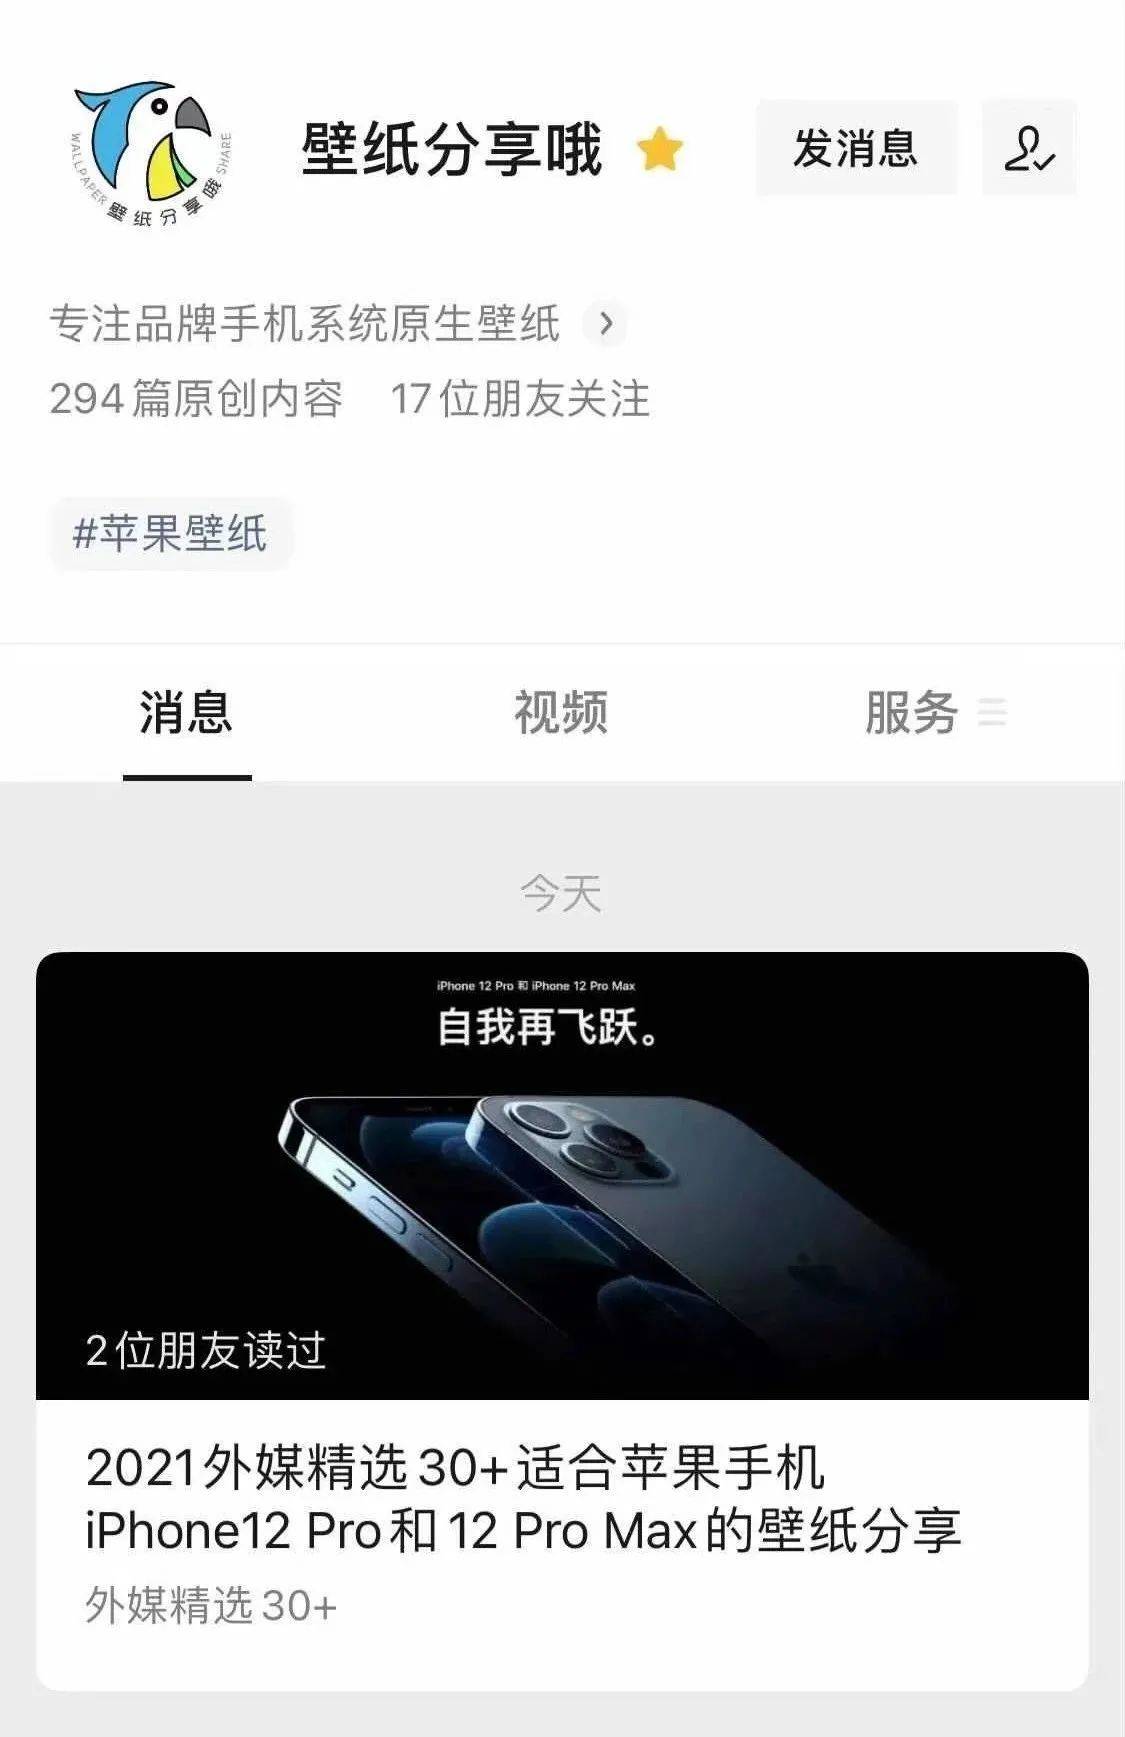 孟子义和经纪人互怼 官宣9月15 Iphone 13要来了 苹果邀请函壁纸用起来先 彰乐信息网